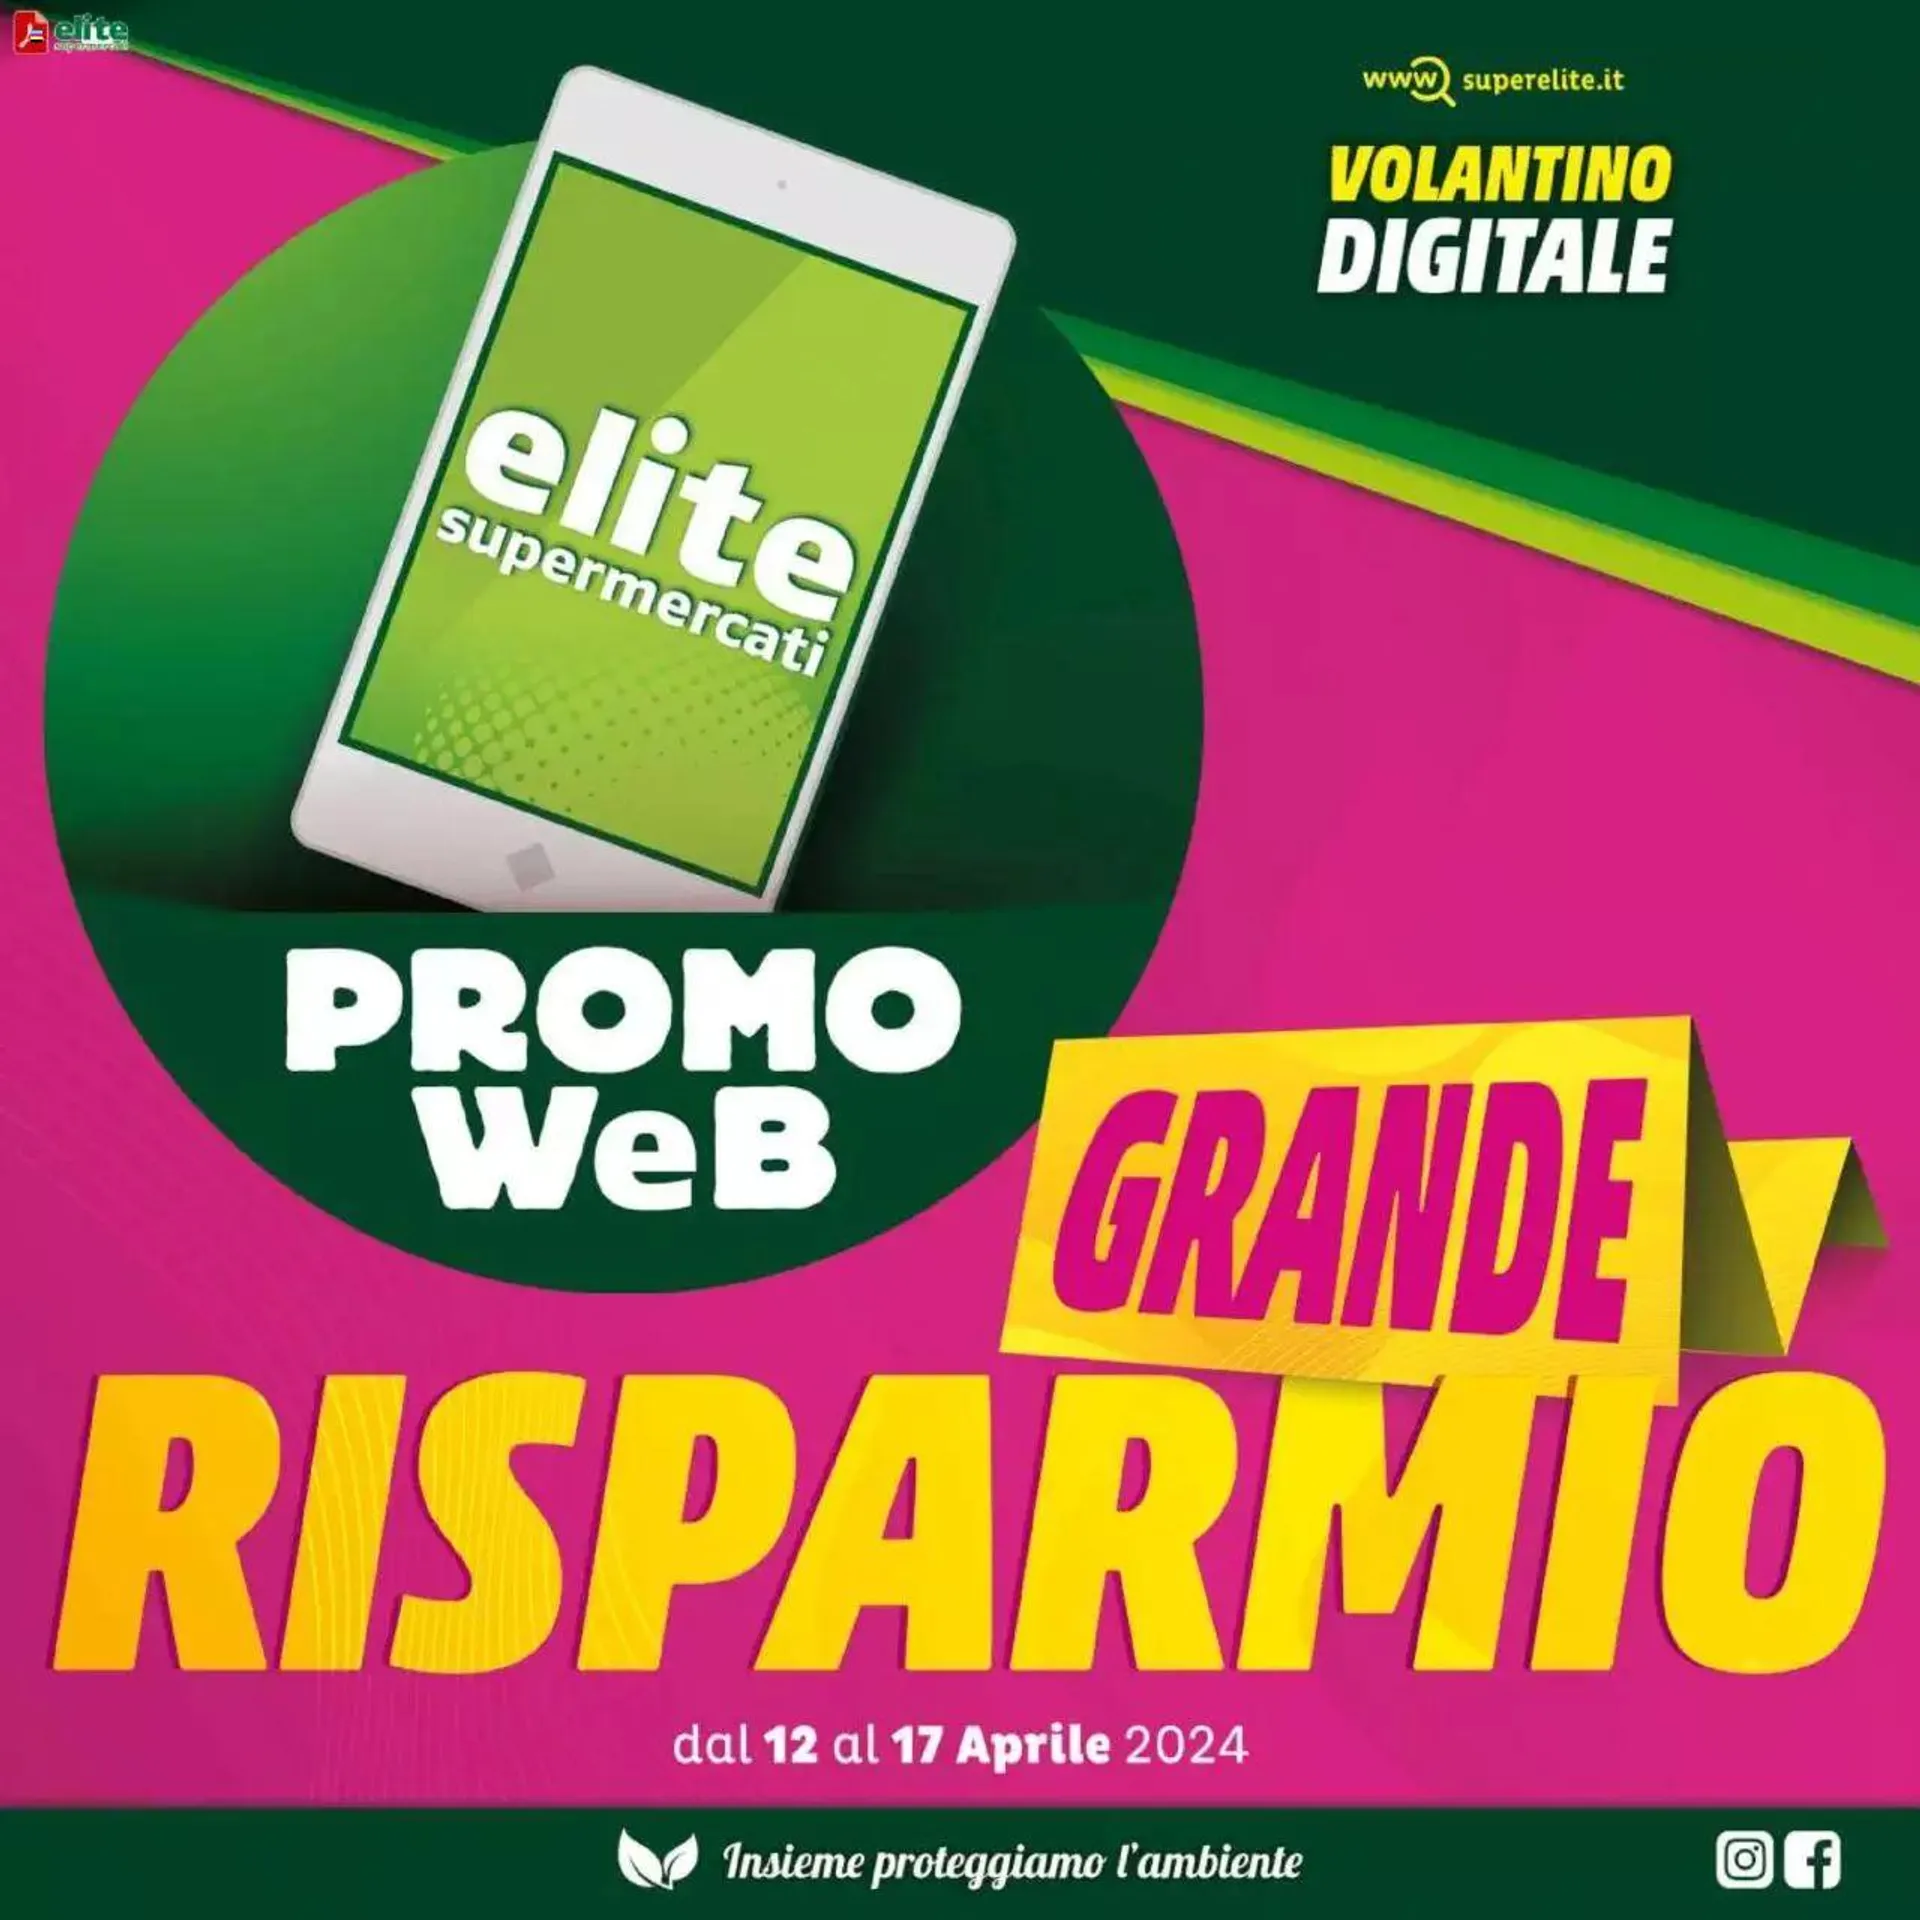 Promo Web - Grande Risparmio Elite Supermercati da 12 aprile a 17 aprile di 2024 - Pagina del volantino 